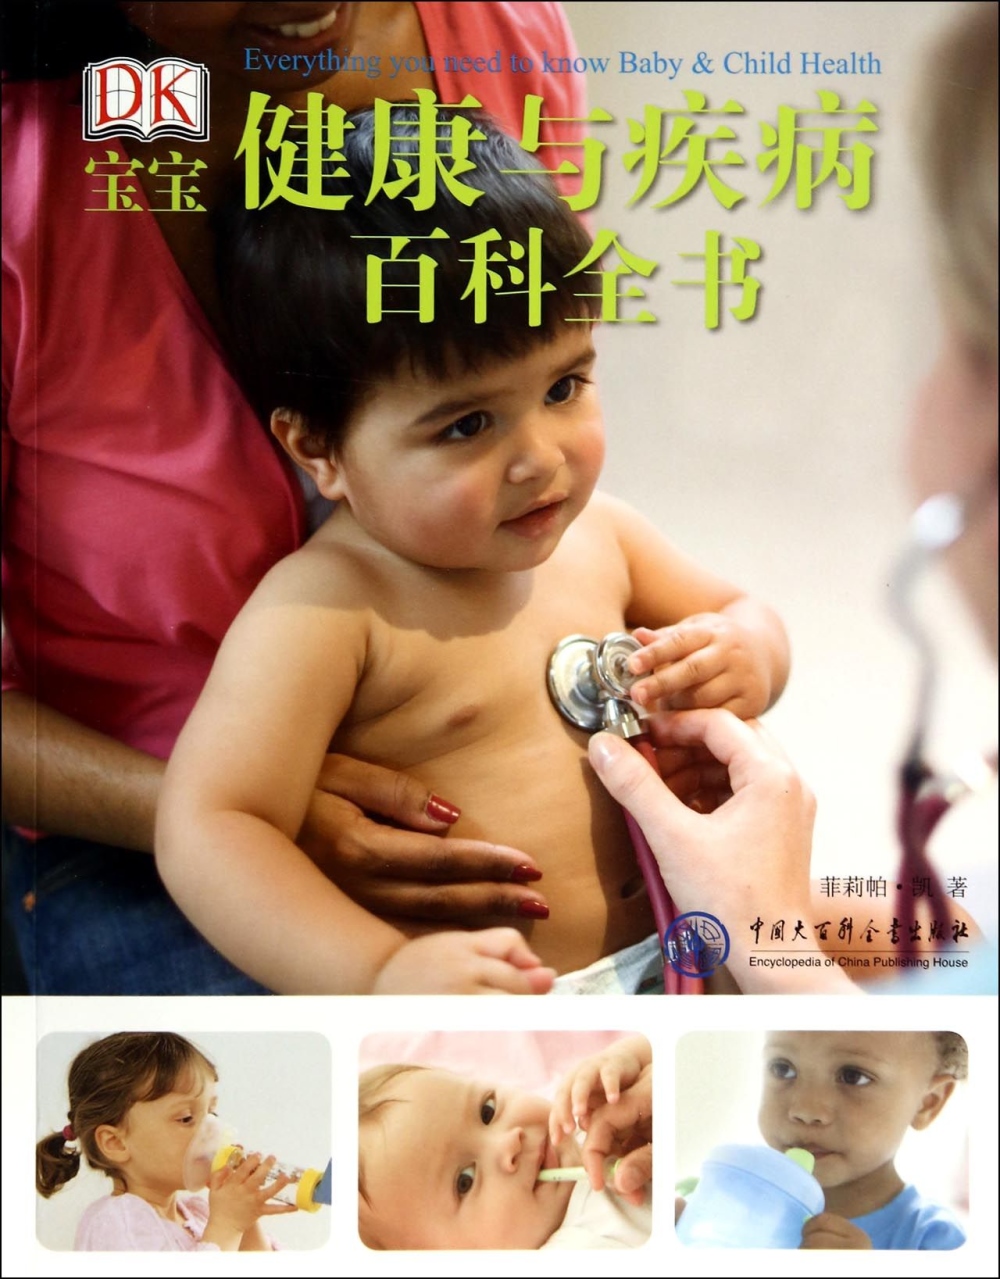 DK寶寶健康與疾病百科全書